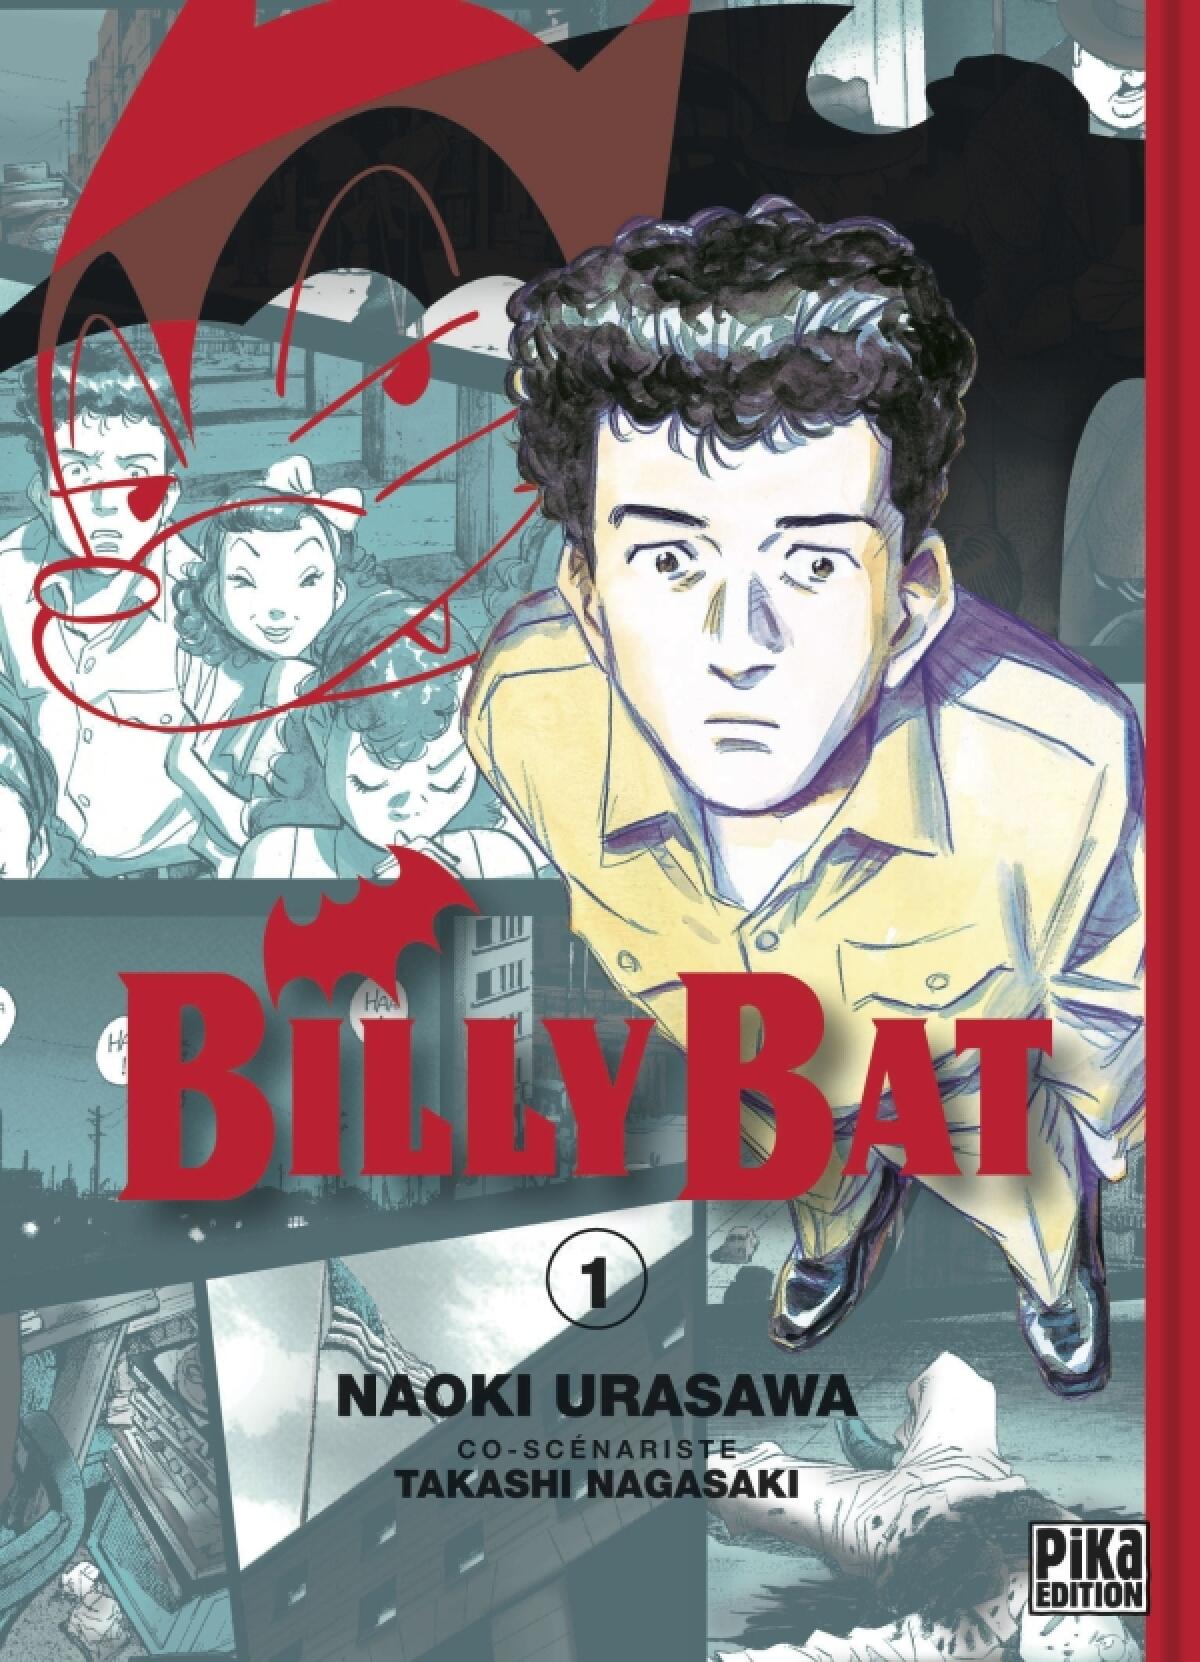 Urasawa revisite l’histoire de l’humanité par le prisme d’une chauve-souris fantastique dans Billy Bat, son oeuvre la plus ambitieuse.